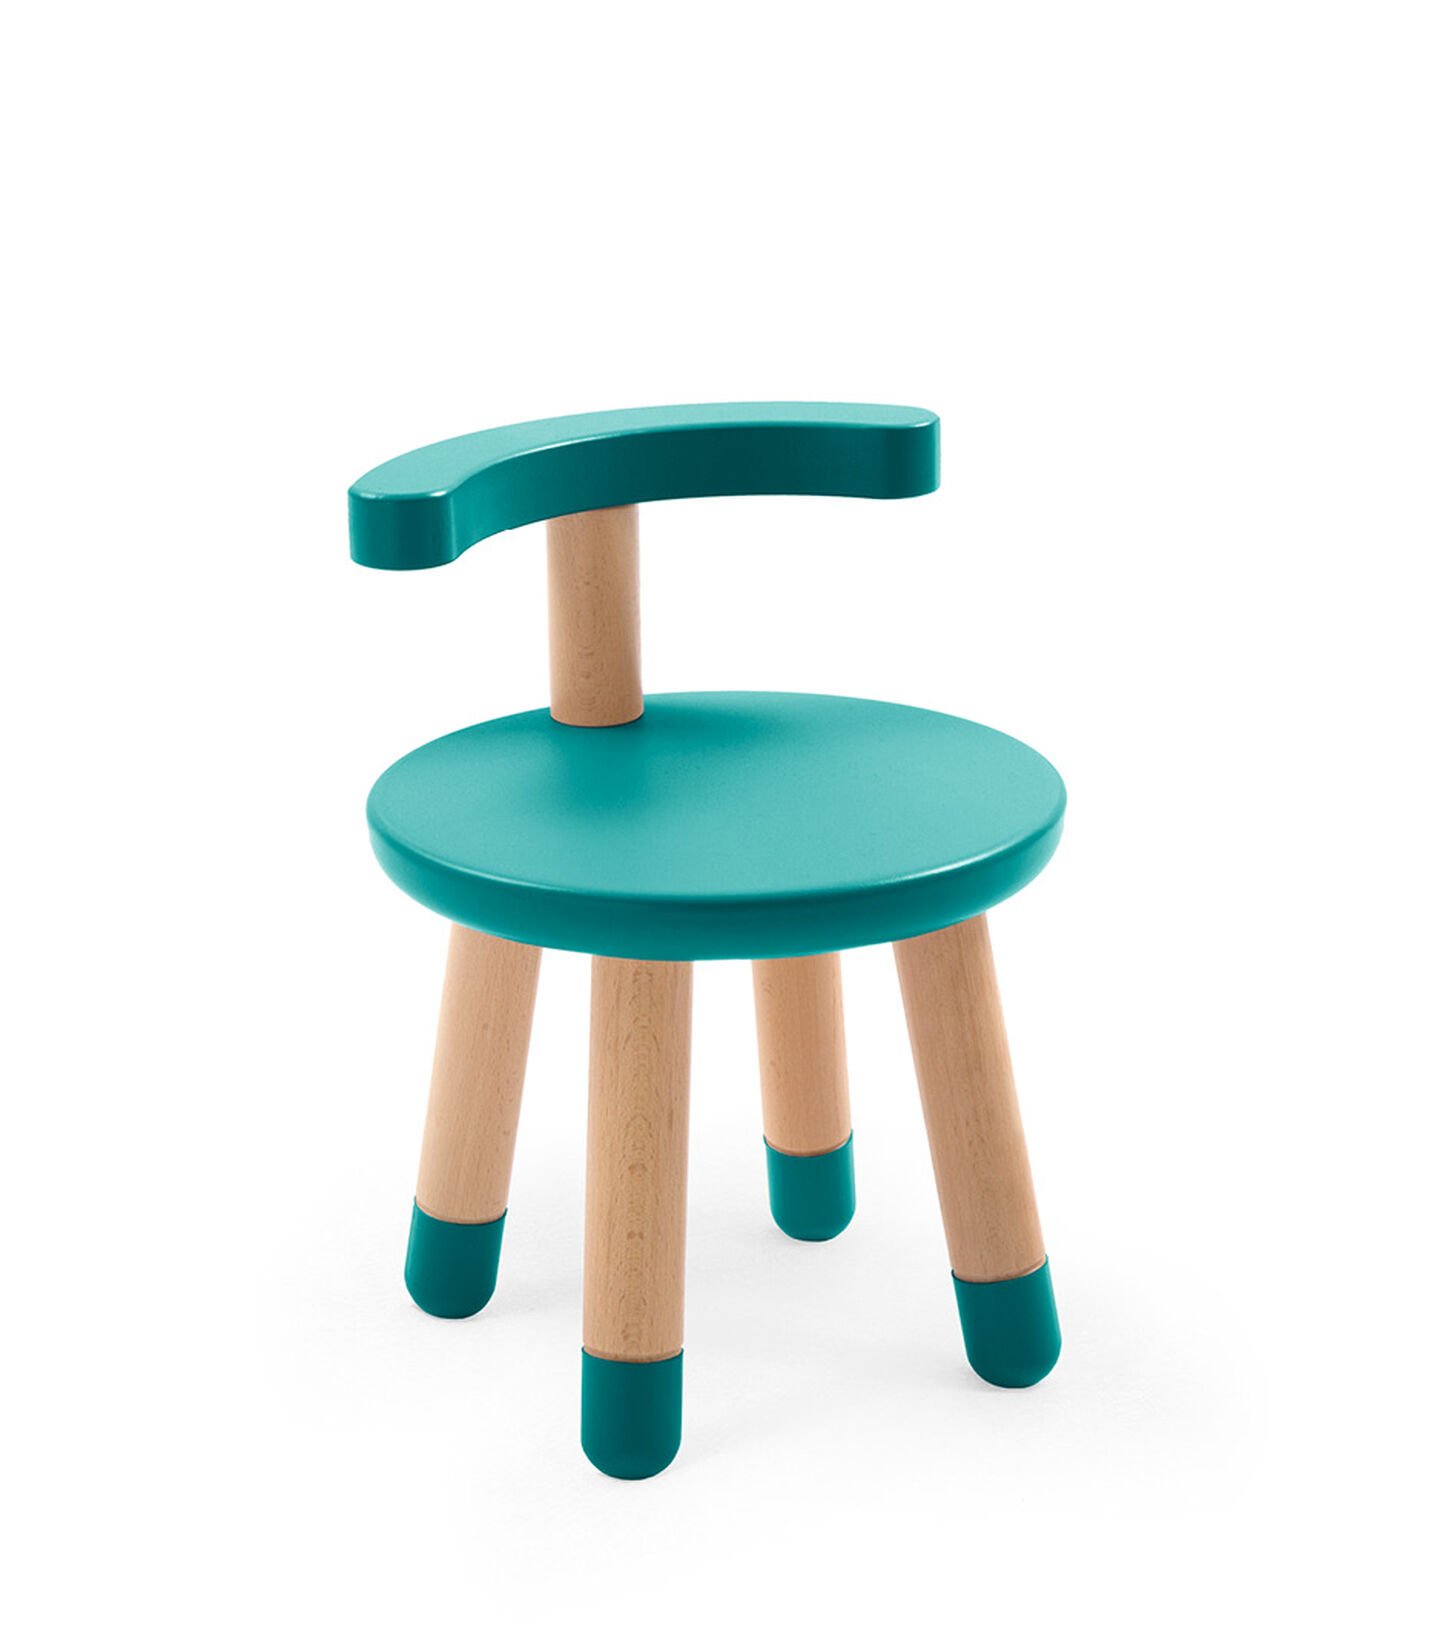 Krzesełko Stokke® MuTable™ turkusowe, Tiffany, mainview view 1